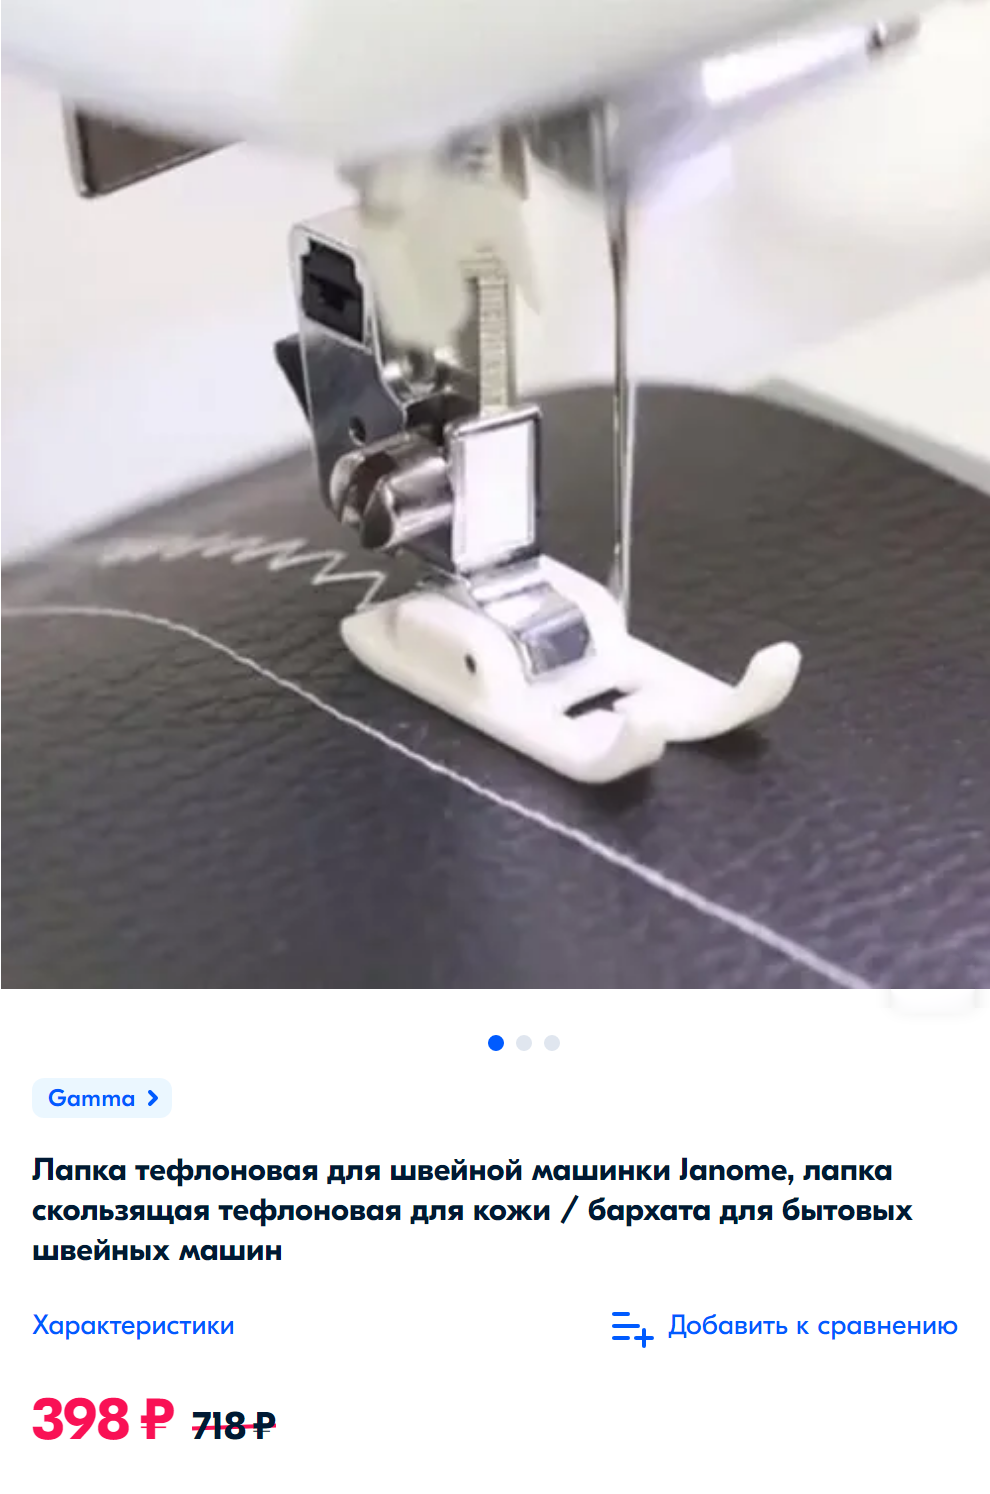 При выборе дополнительных лапок обращайте внимание, для швейных машинок каких фирм и моделей они подходят. Источник: ozon.ru